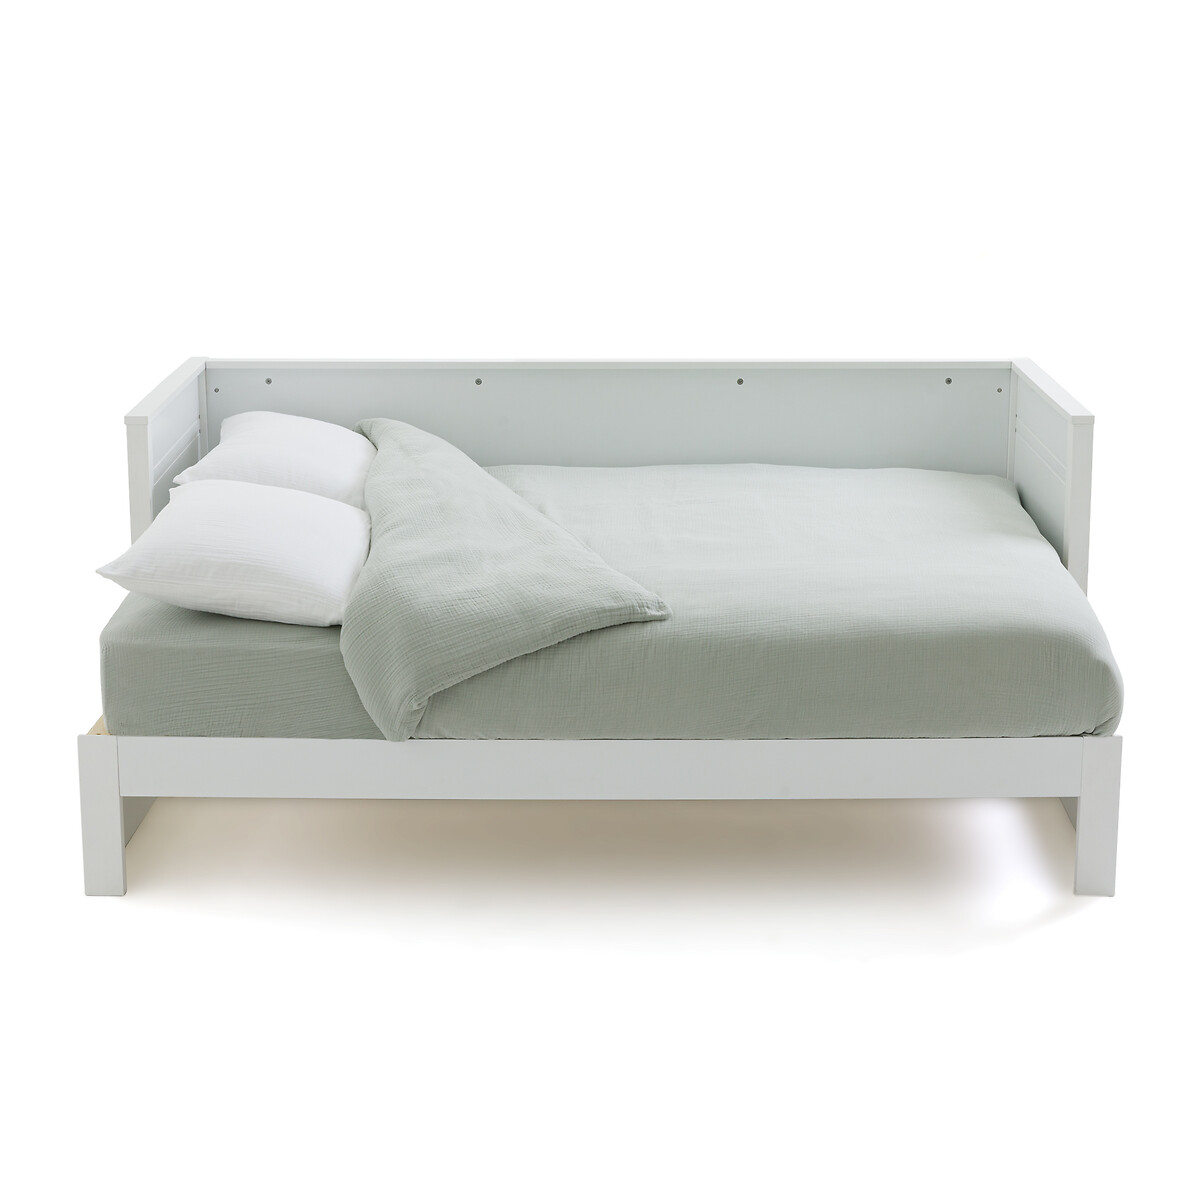 Диван-кровать La Redoute С двойным спальным местом Leeds 160 x 200 см белый, размер 160 x 200 см - фото 2